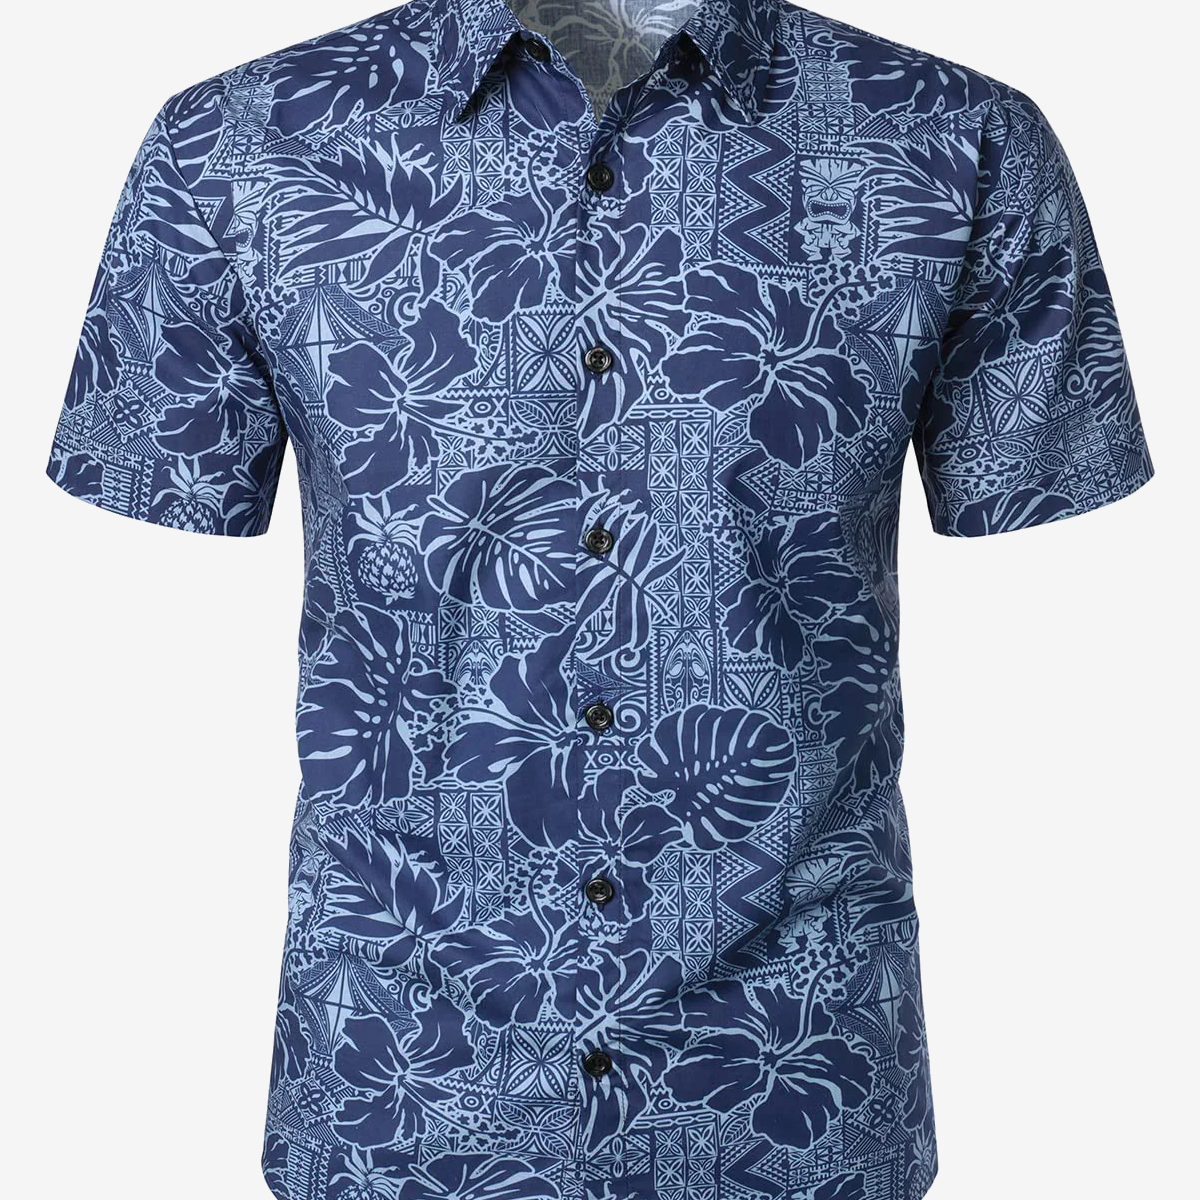 Men's Navy Blue Hawaiian Floral Hibiscus Print Summer Button Short Sleeve Summer Shirt